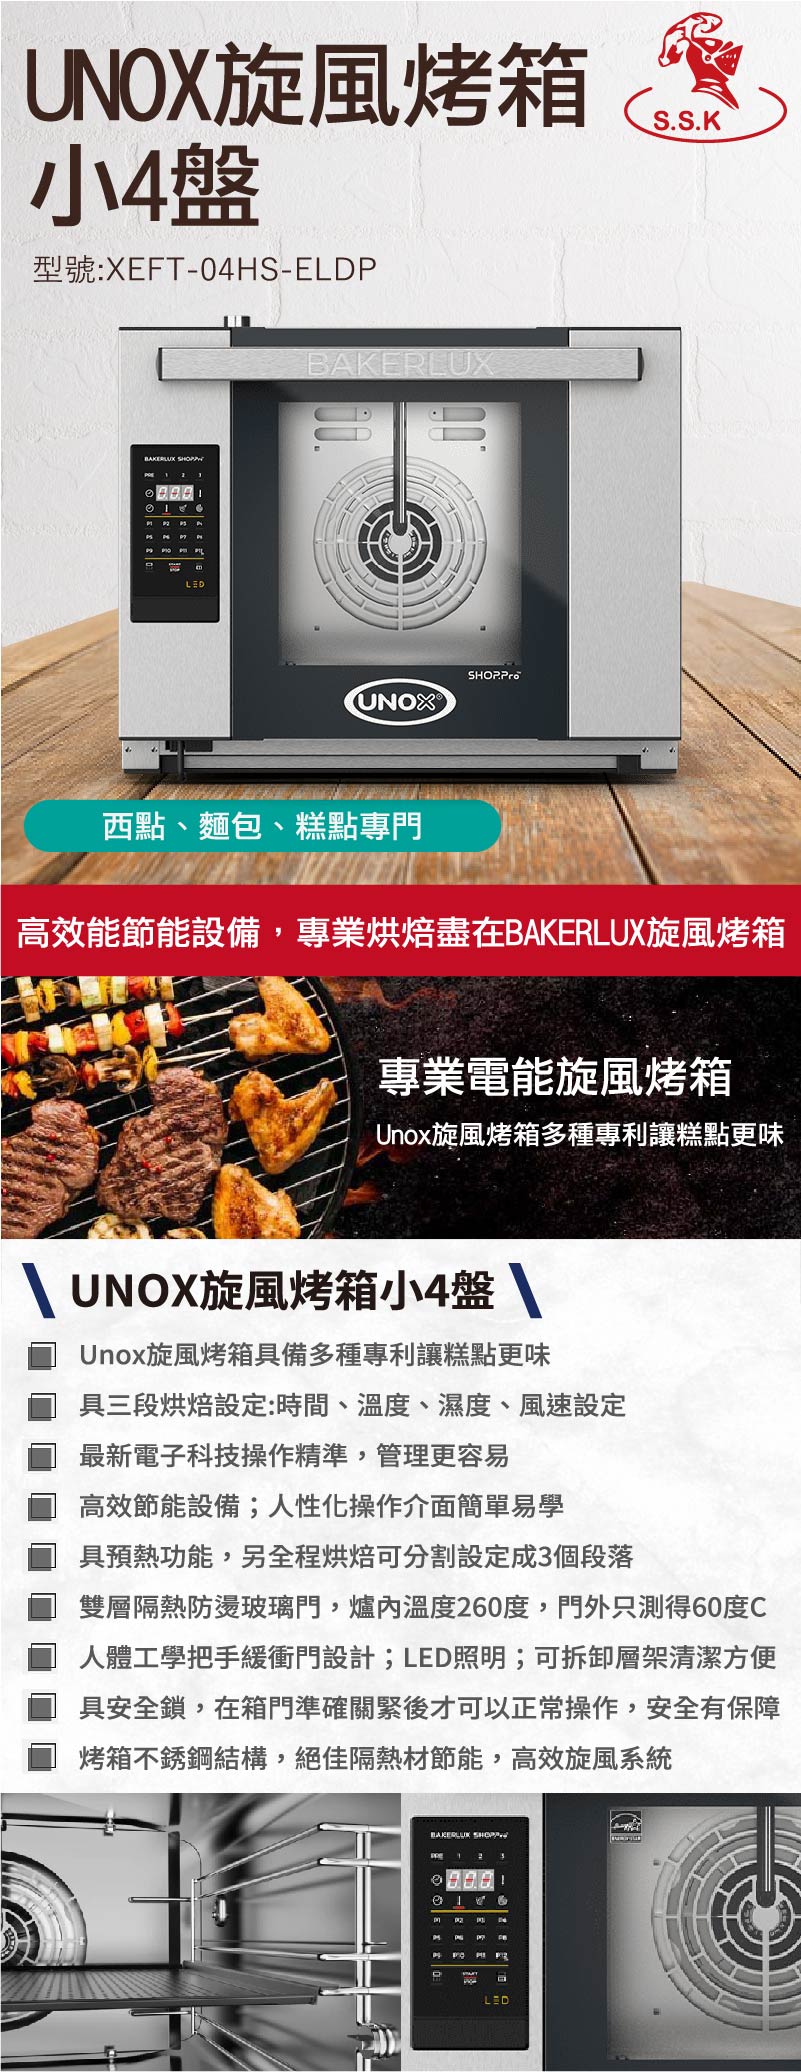 Unox旋風烤箱